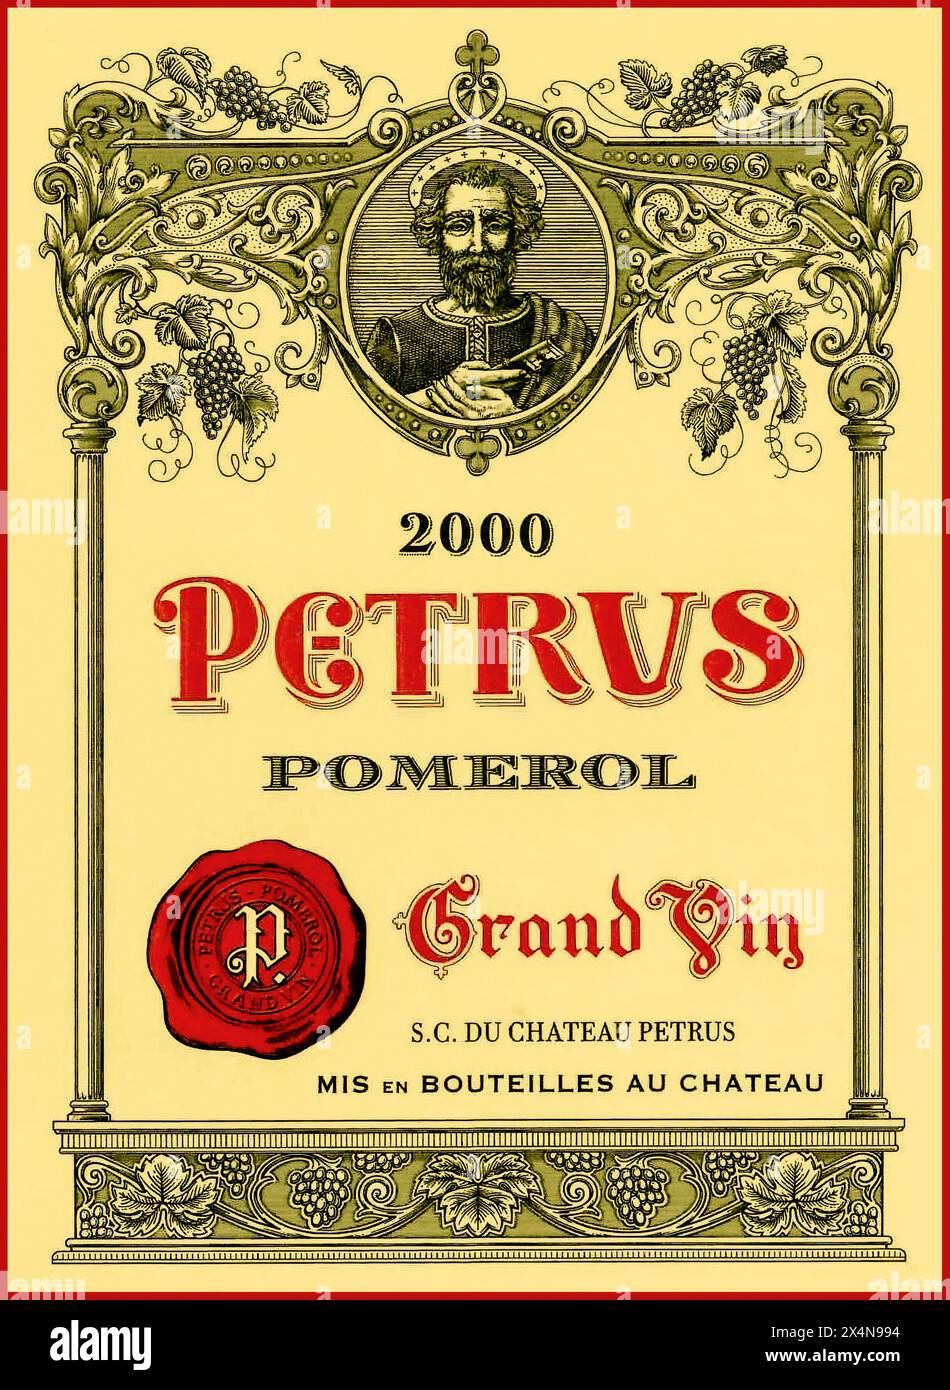 CHATEAU PETRUS bottiglia etichetta dell'anno di vendemmia eccezionale 2000 Chateau Petrus Pomerol Grand Vin vino rosso Bordeaux Francia Foto Stock